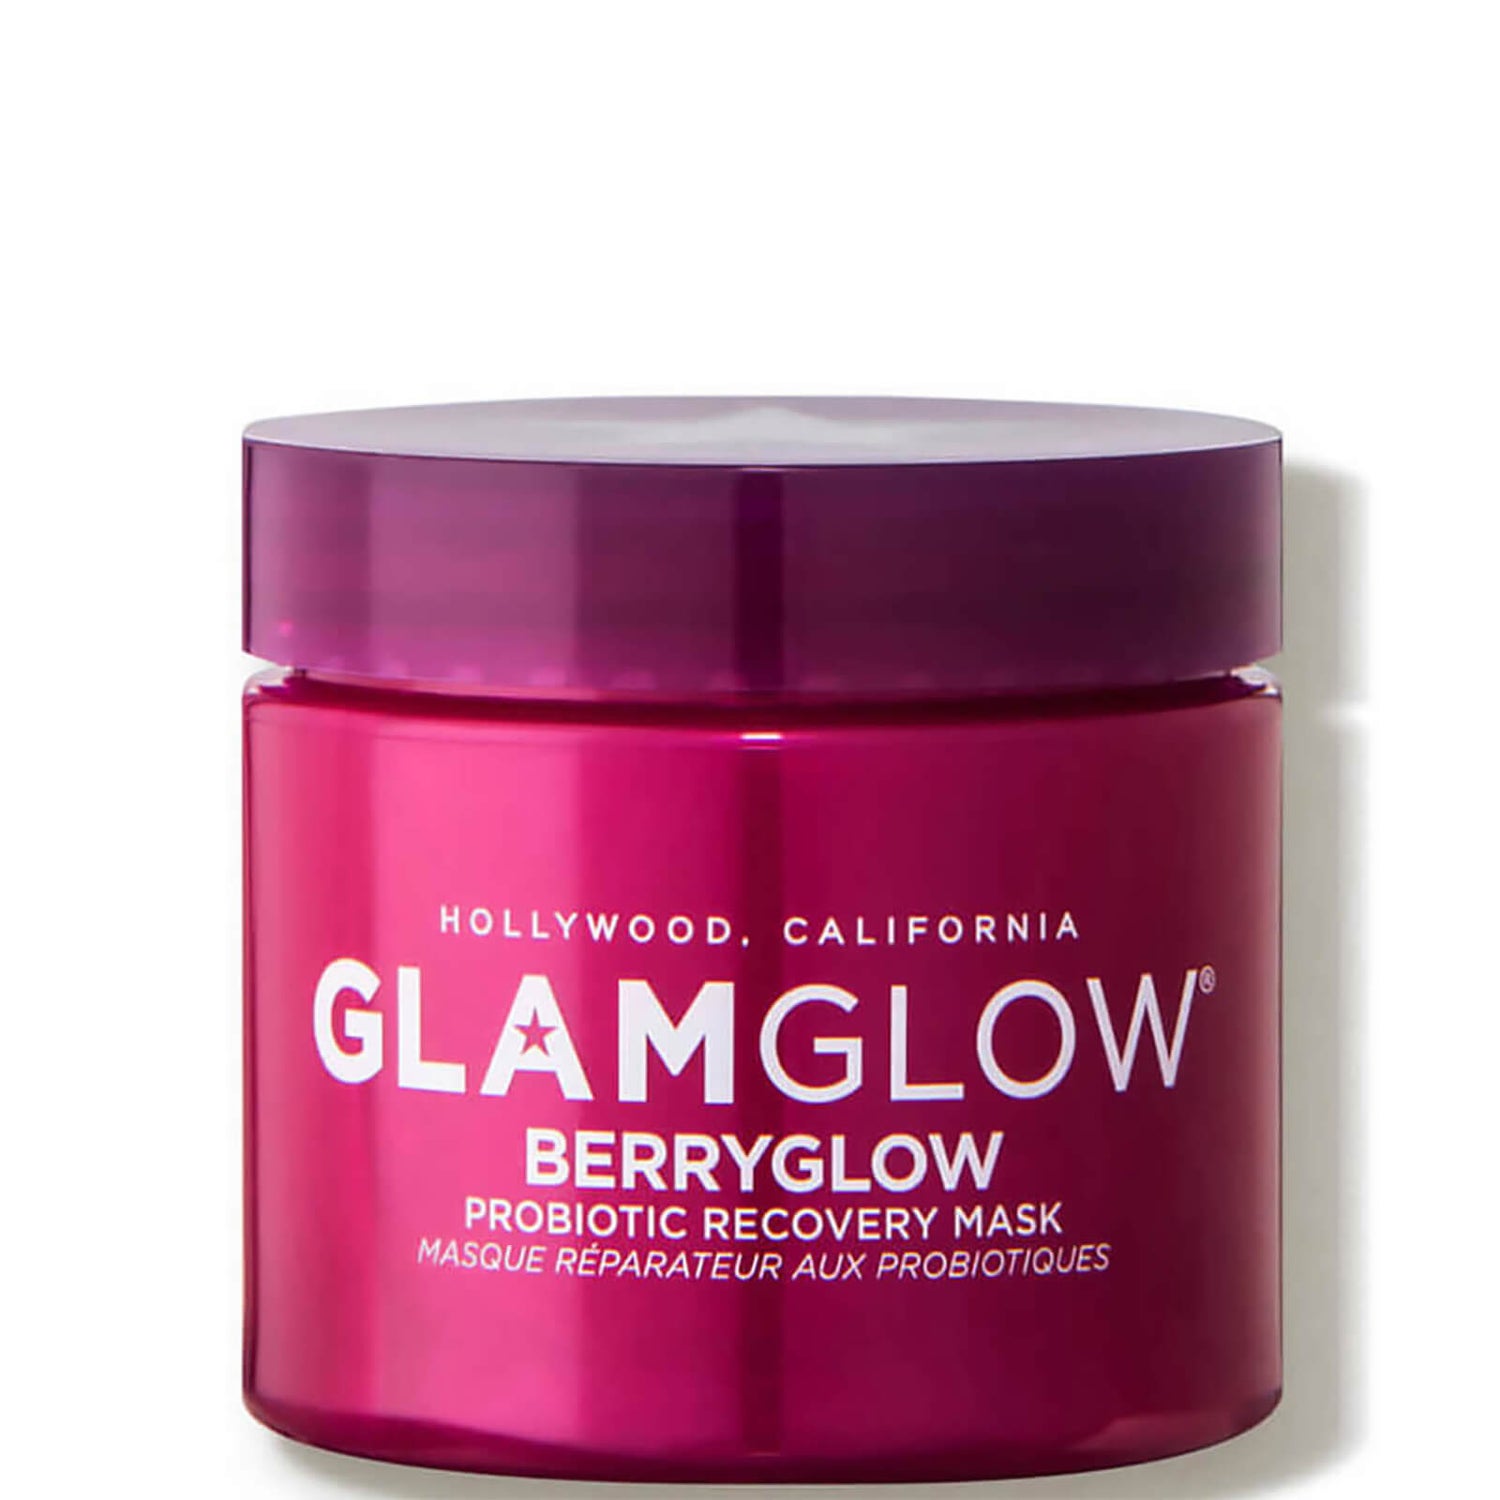 GLAMGLOW BERRYGLOW Probiotic Recovery Mask (2.5 oz.)